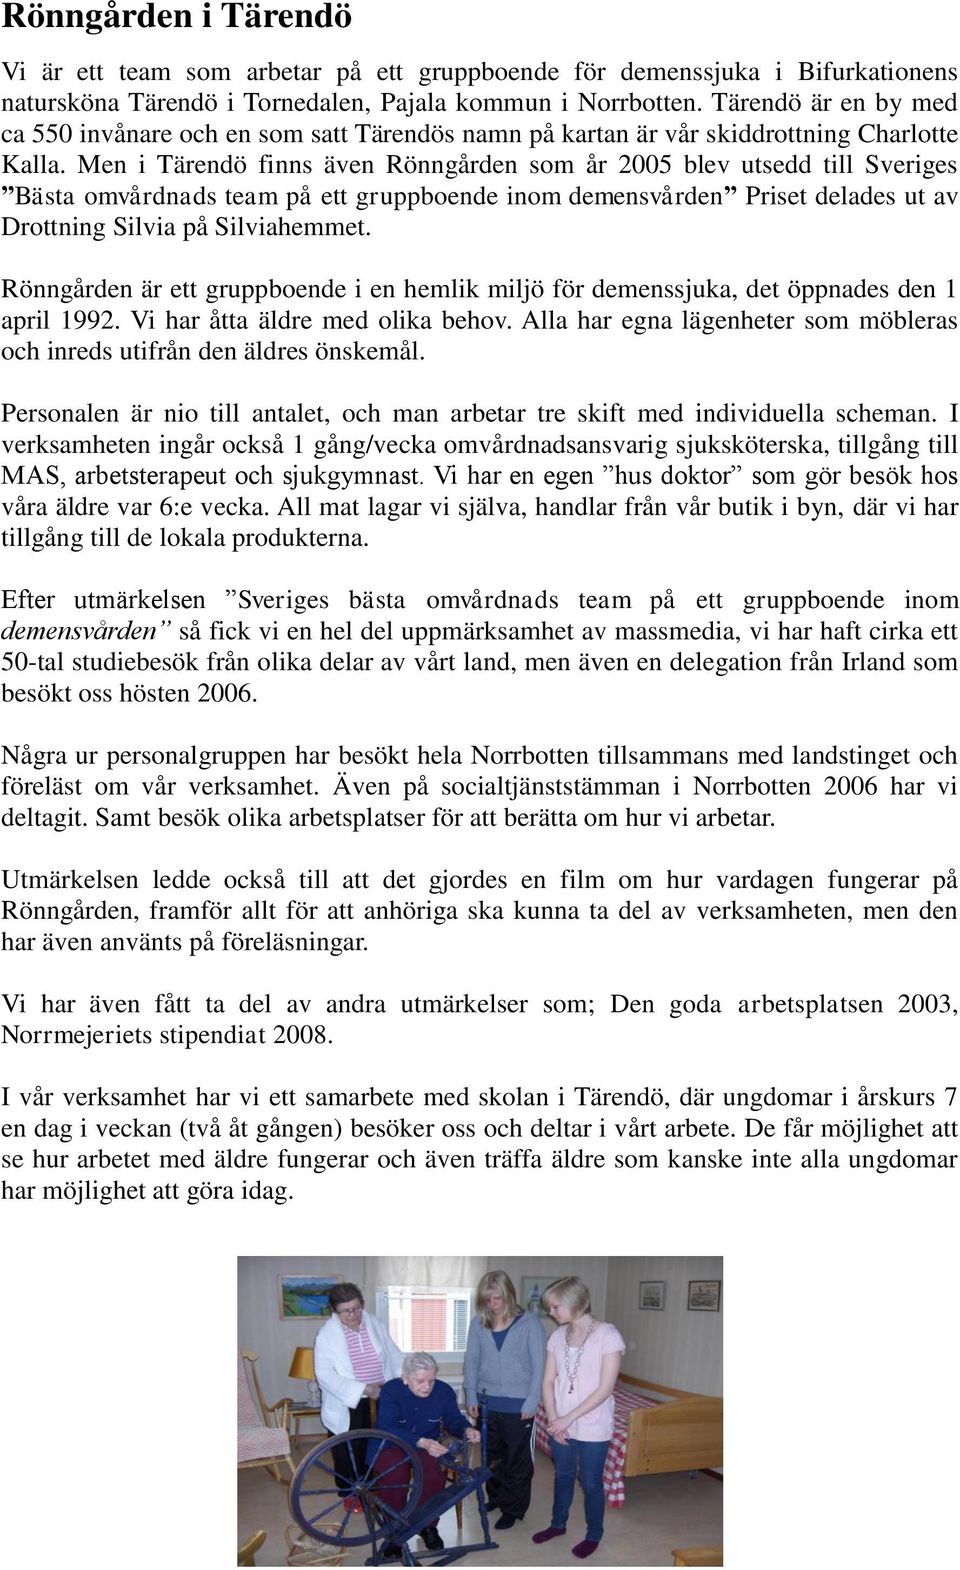 Men i Tärendö finns även Rönngården som år 2005 blev utsedd till Sveriges Bästa omvårdnads team på ett gruppboende inom demensvården Priset delades ut av Drottning Silvia på Silviahemmet.